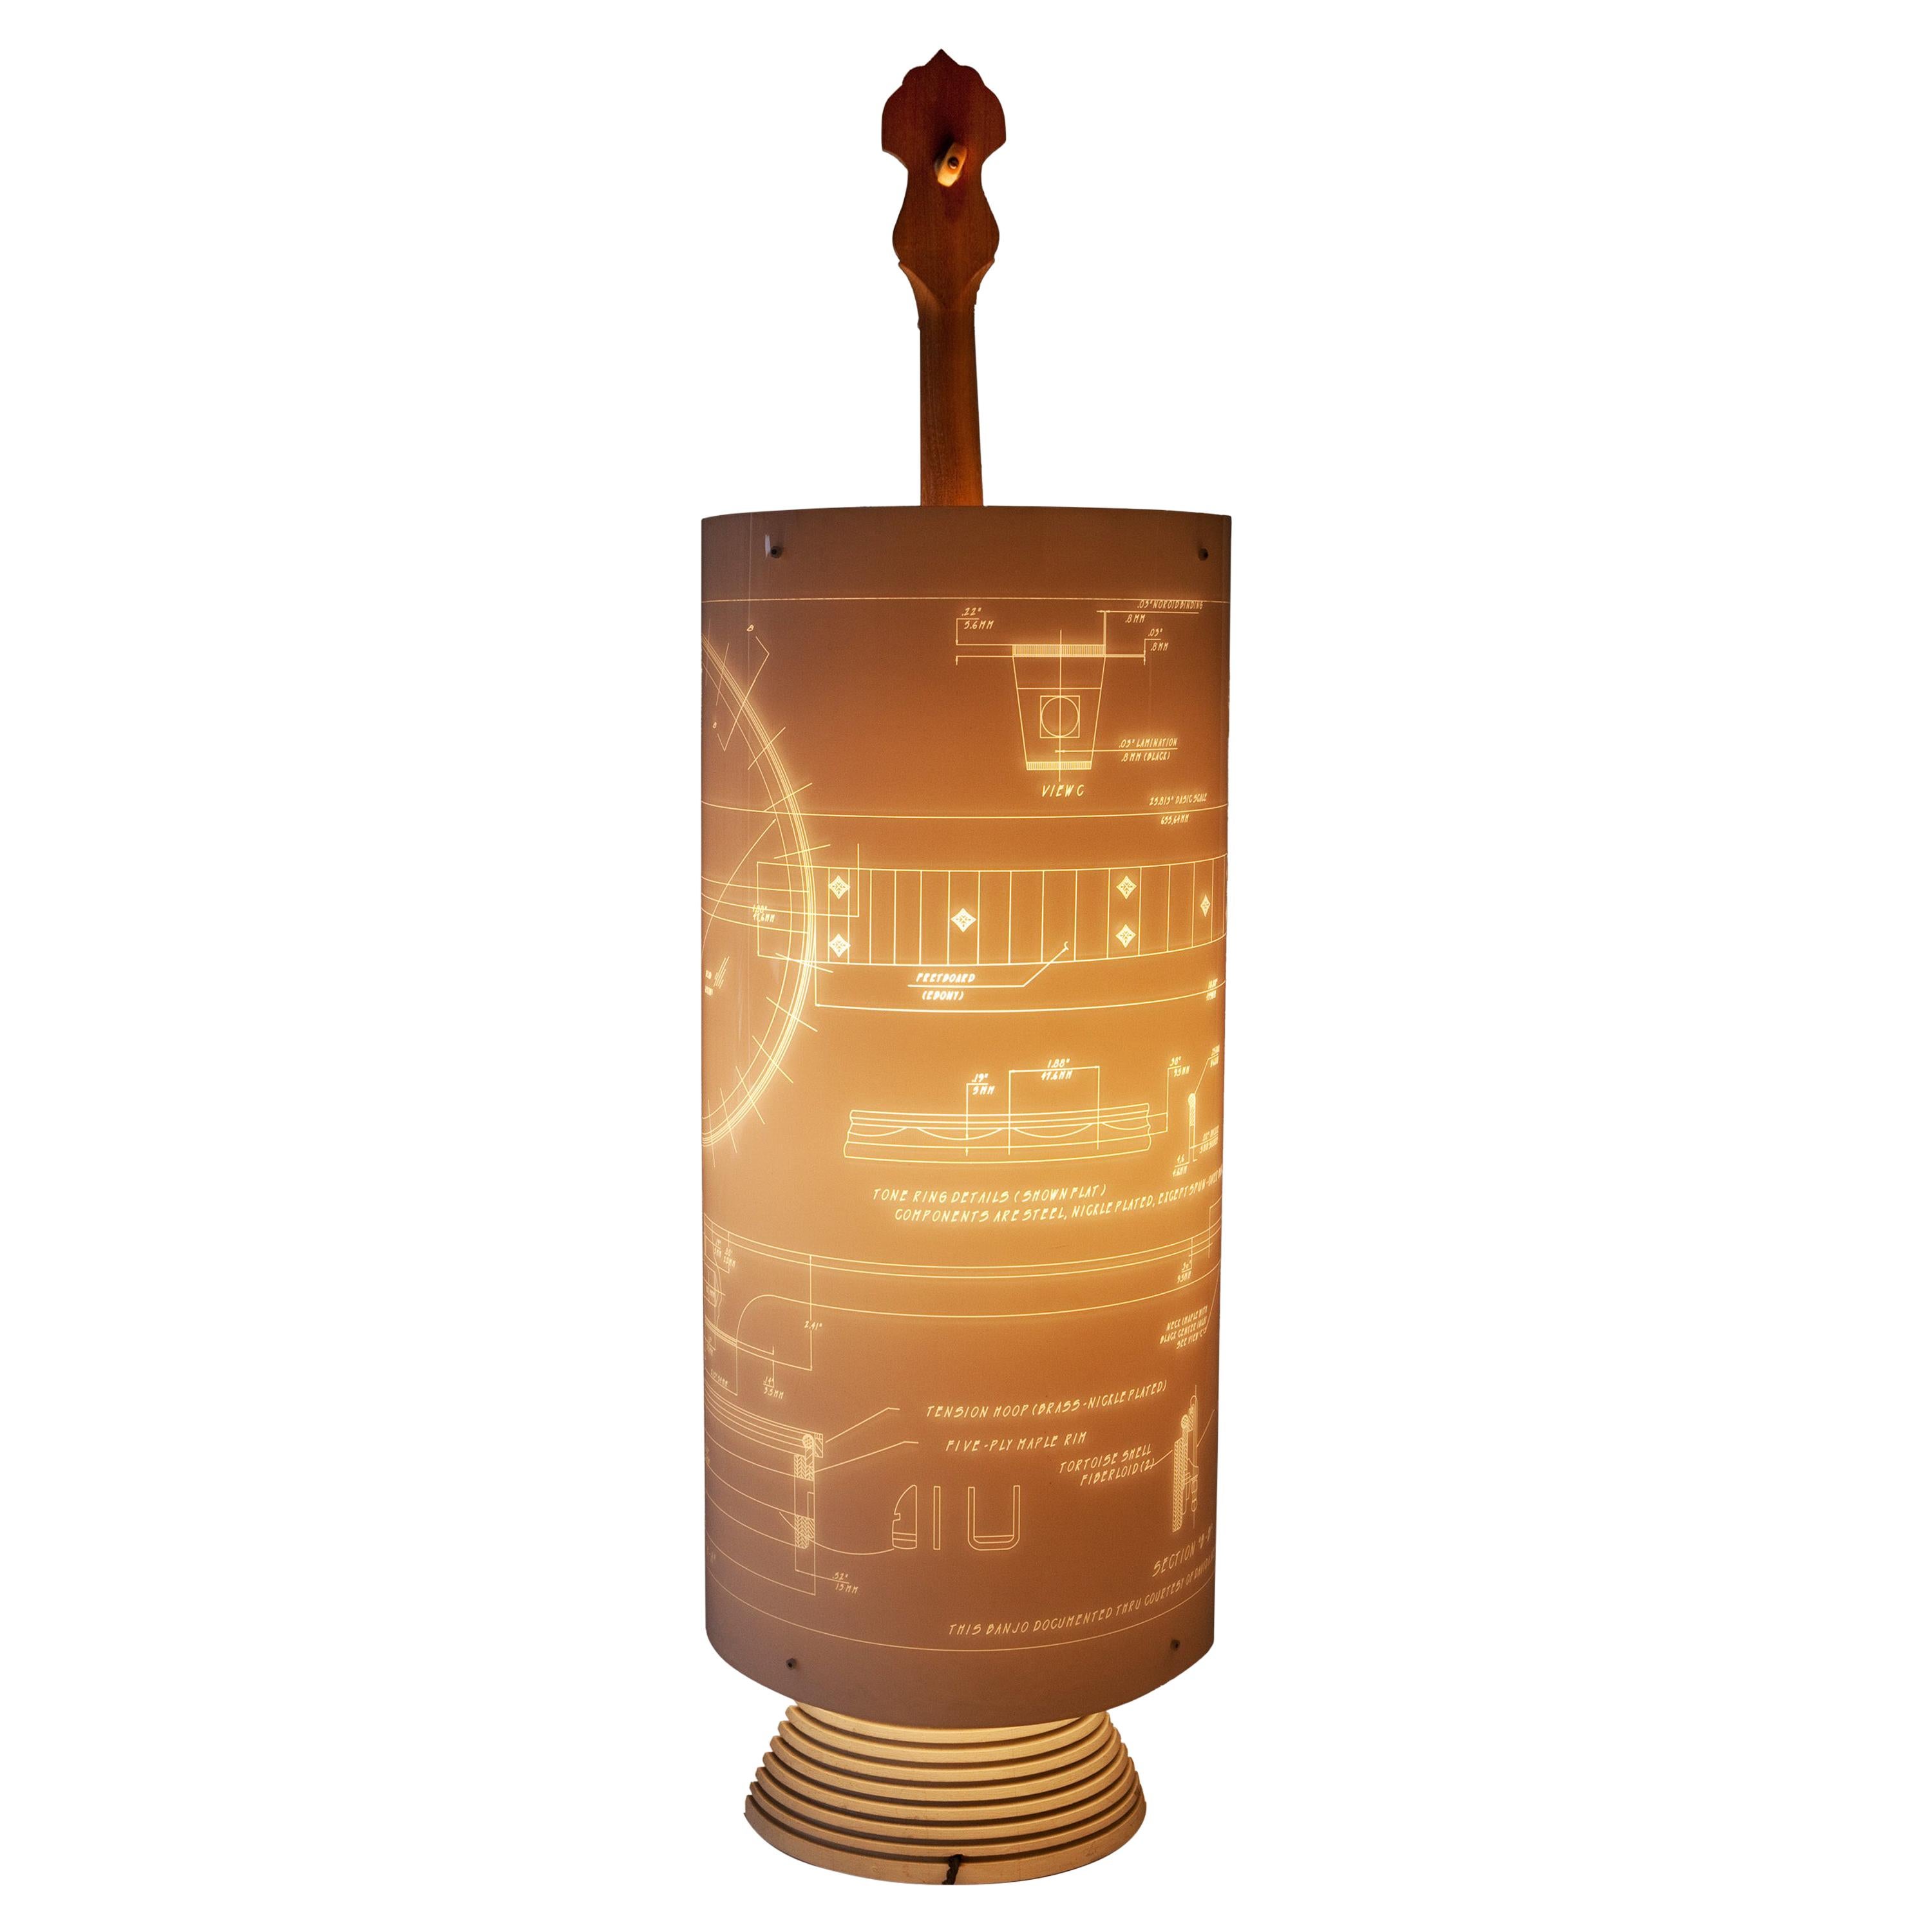 Banjo-Lampe, entworfen von Atelier Boucquet